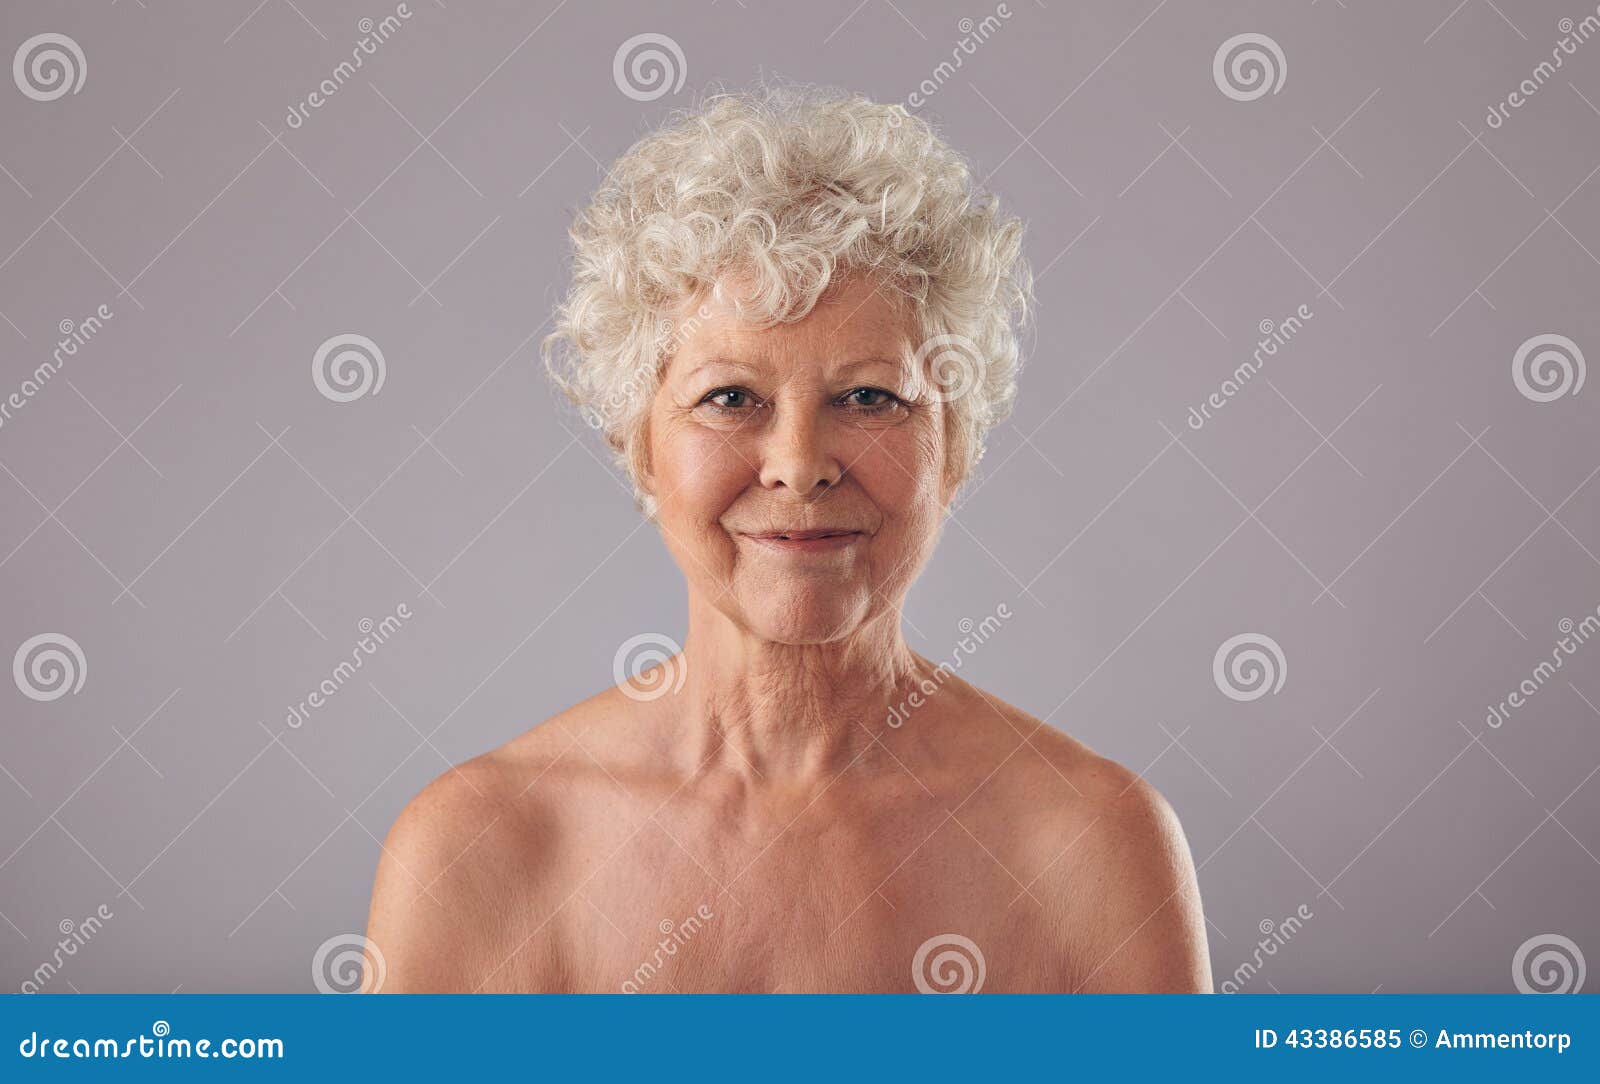 Naked senior citizen women